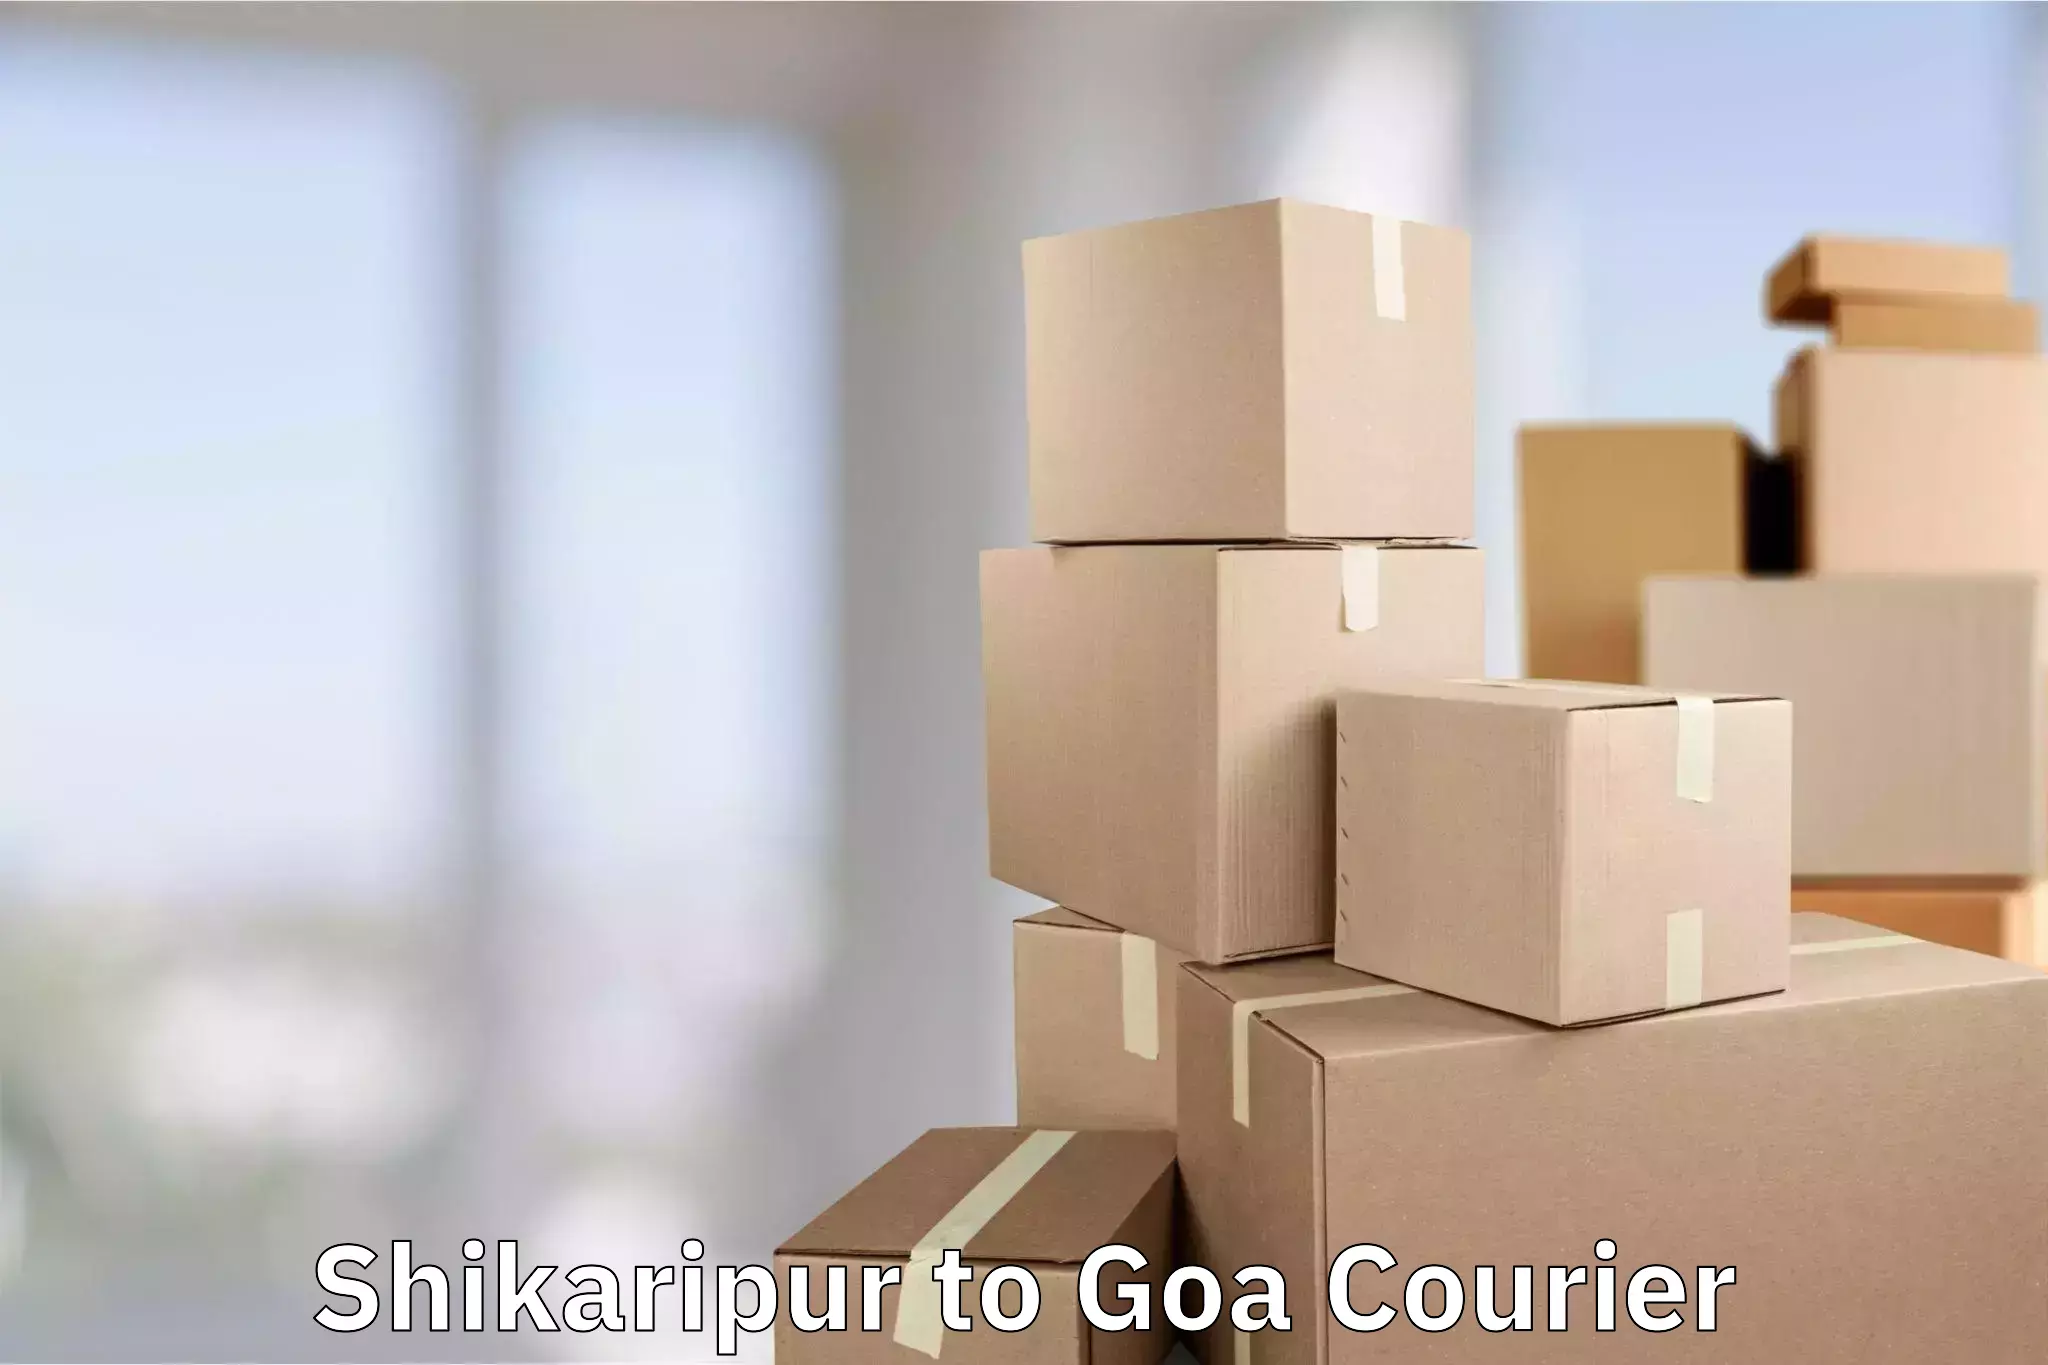 Luggage transit service Shikaripur to IIT Goa